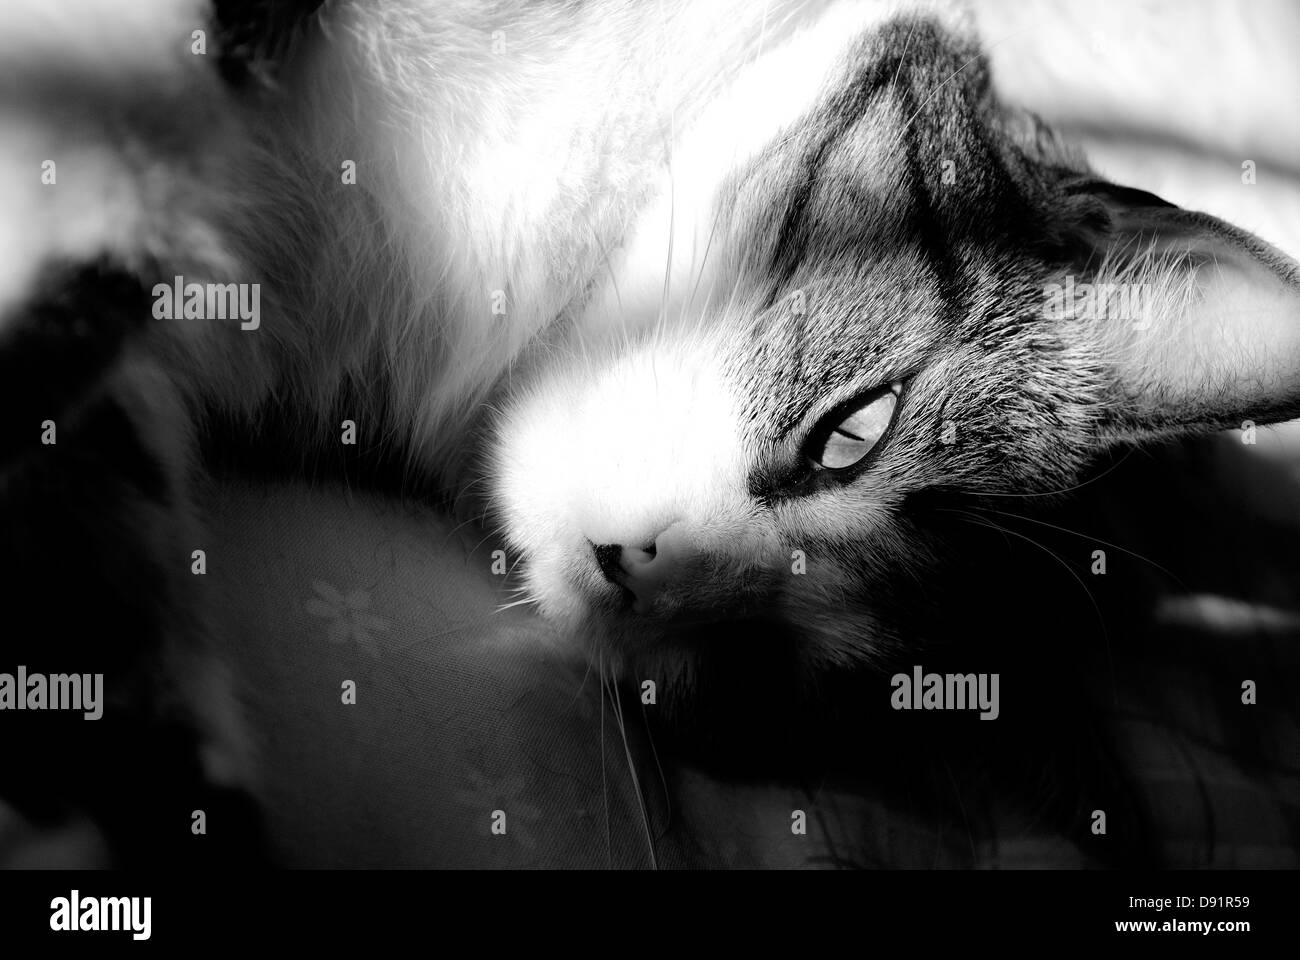 Une image en noir et blanc d'un chat dans l'ombre. Une image artistique d'un animal domestique. Banque D'Images